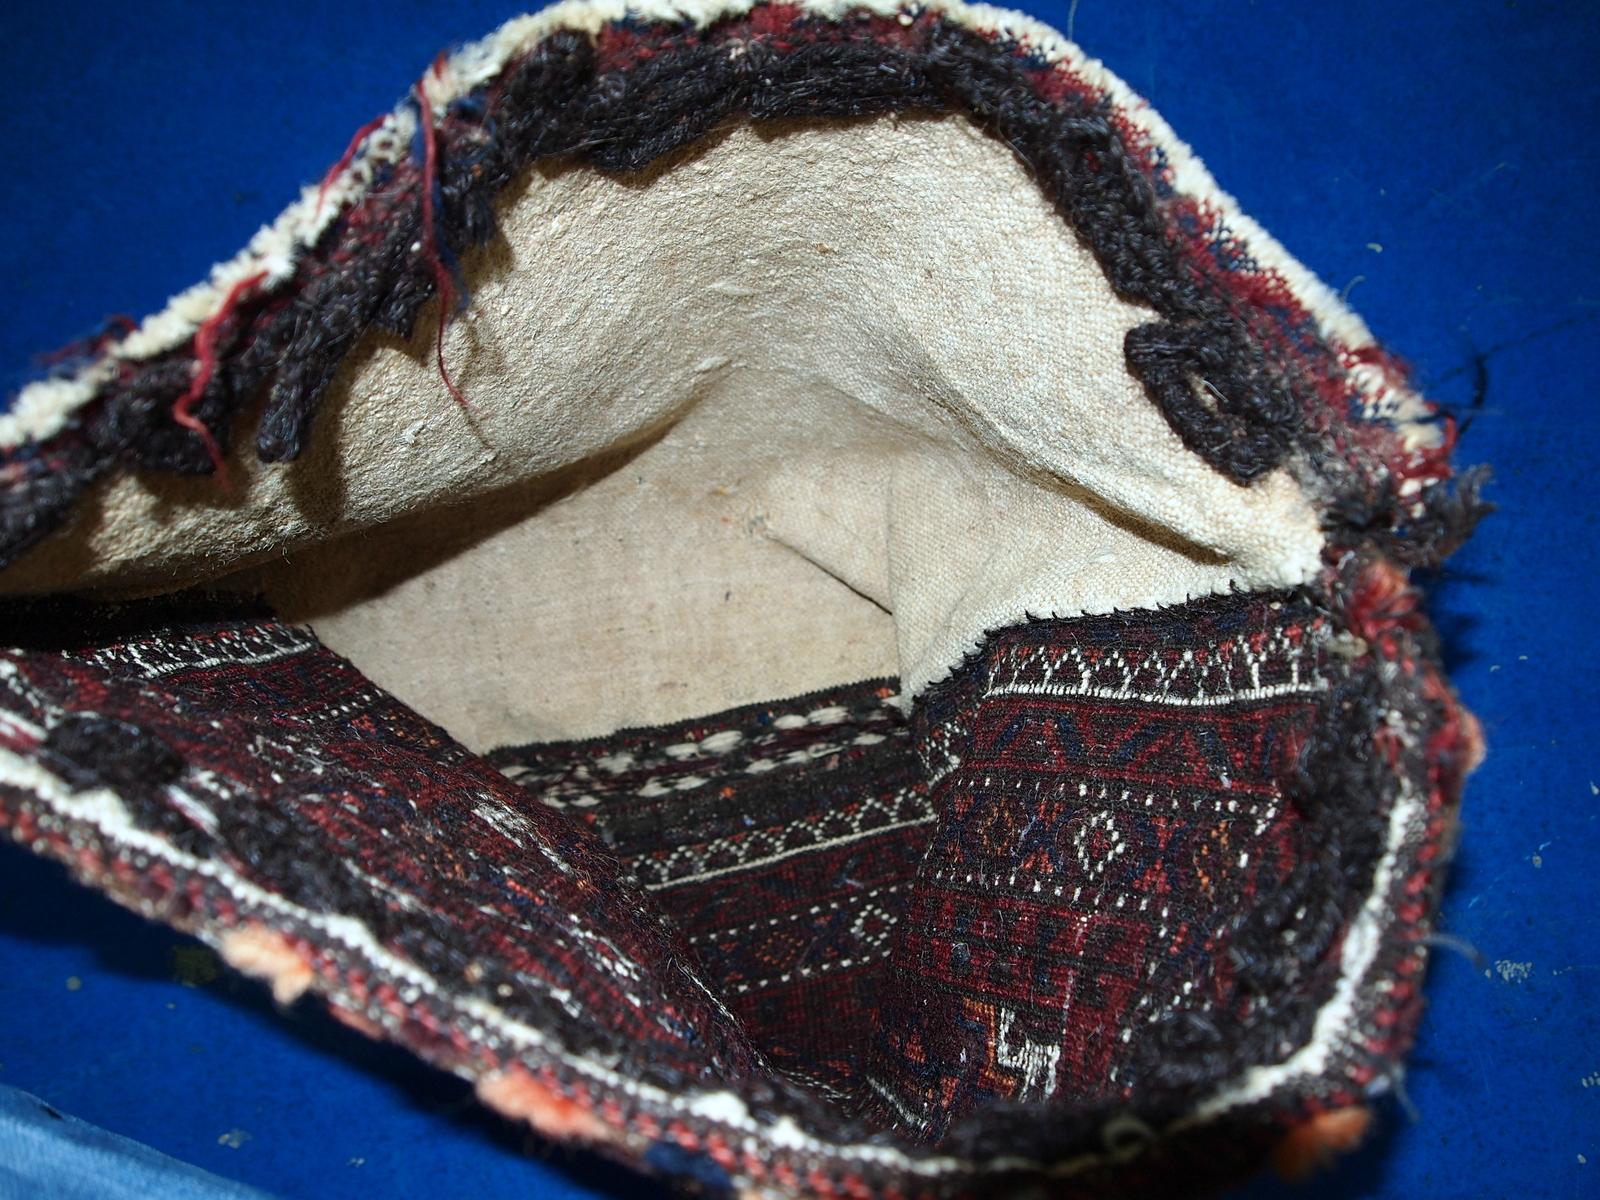 Antike handgefertigte afghanische Belutsch-Salztasche im Originalzustand, sie hat einige Altersspuren. 

-Zustand: original, geringe Altersspuren,

-Etwa: 1900er Jahre,

-Größe: 1,4' x 1,5' (44cm x 45cm),

-Material: